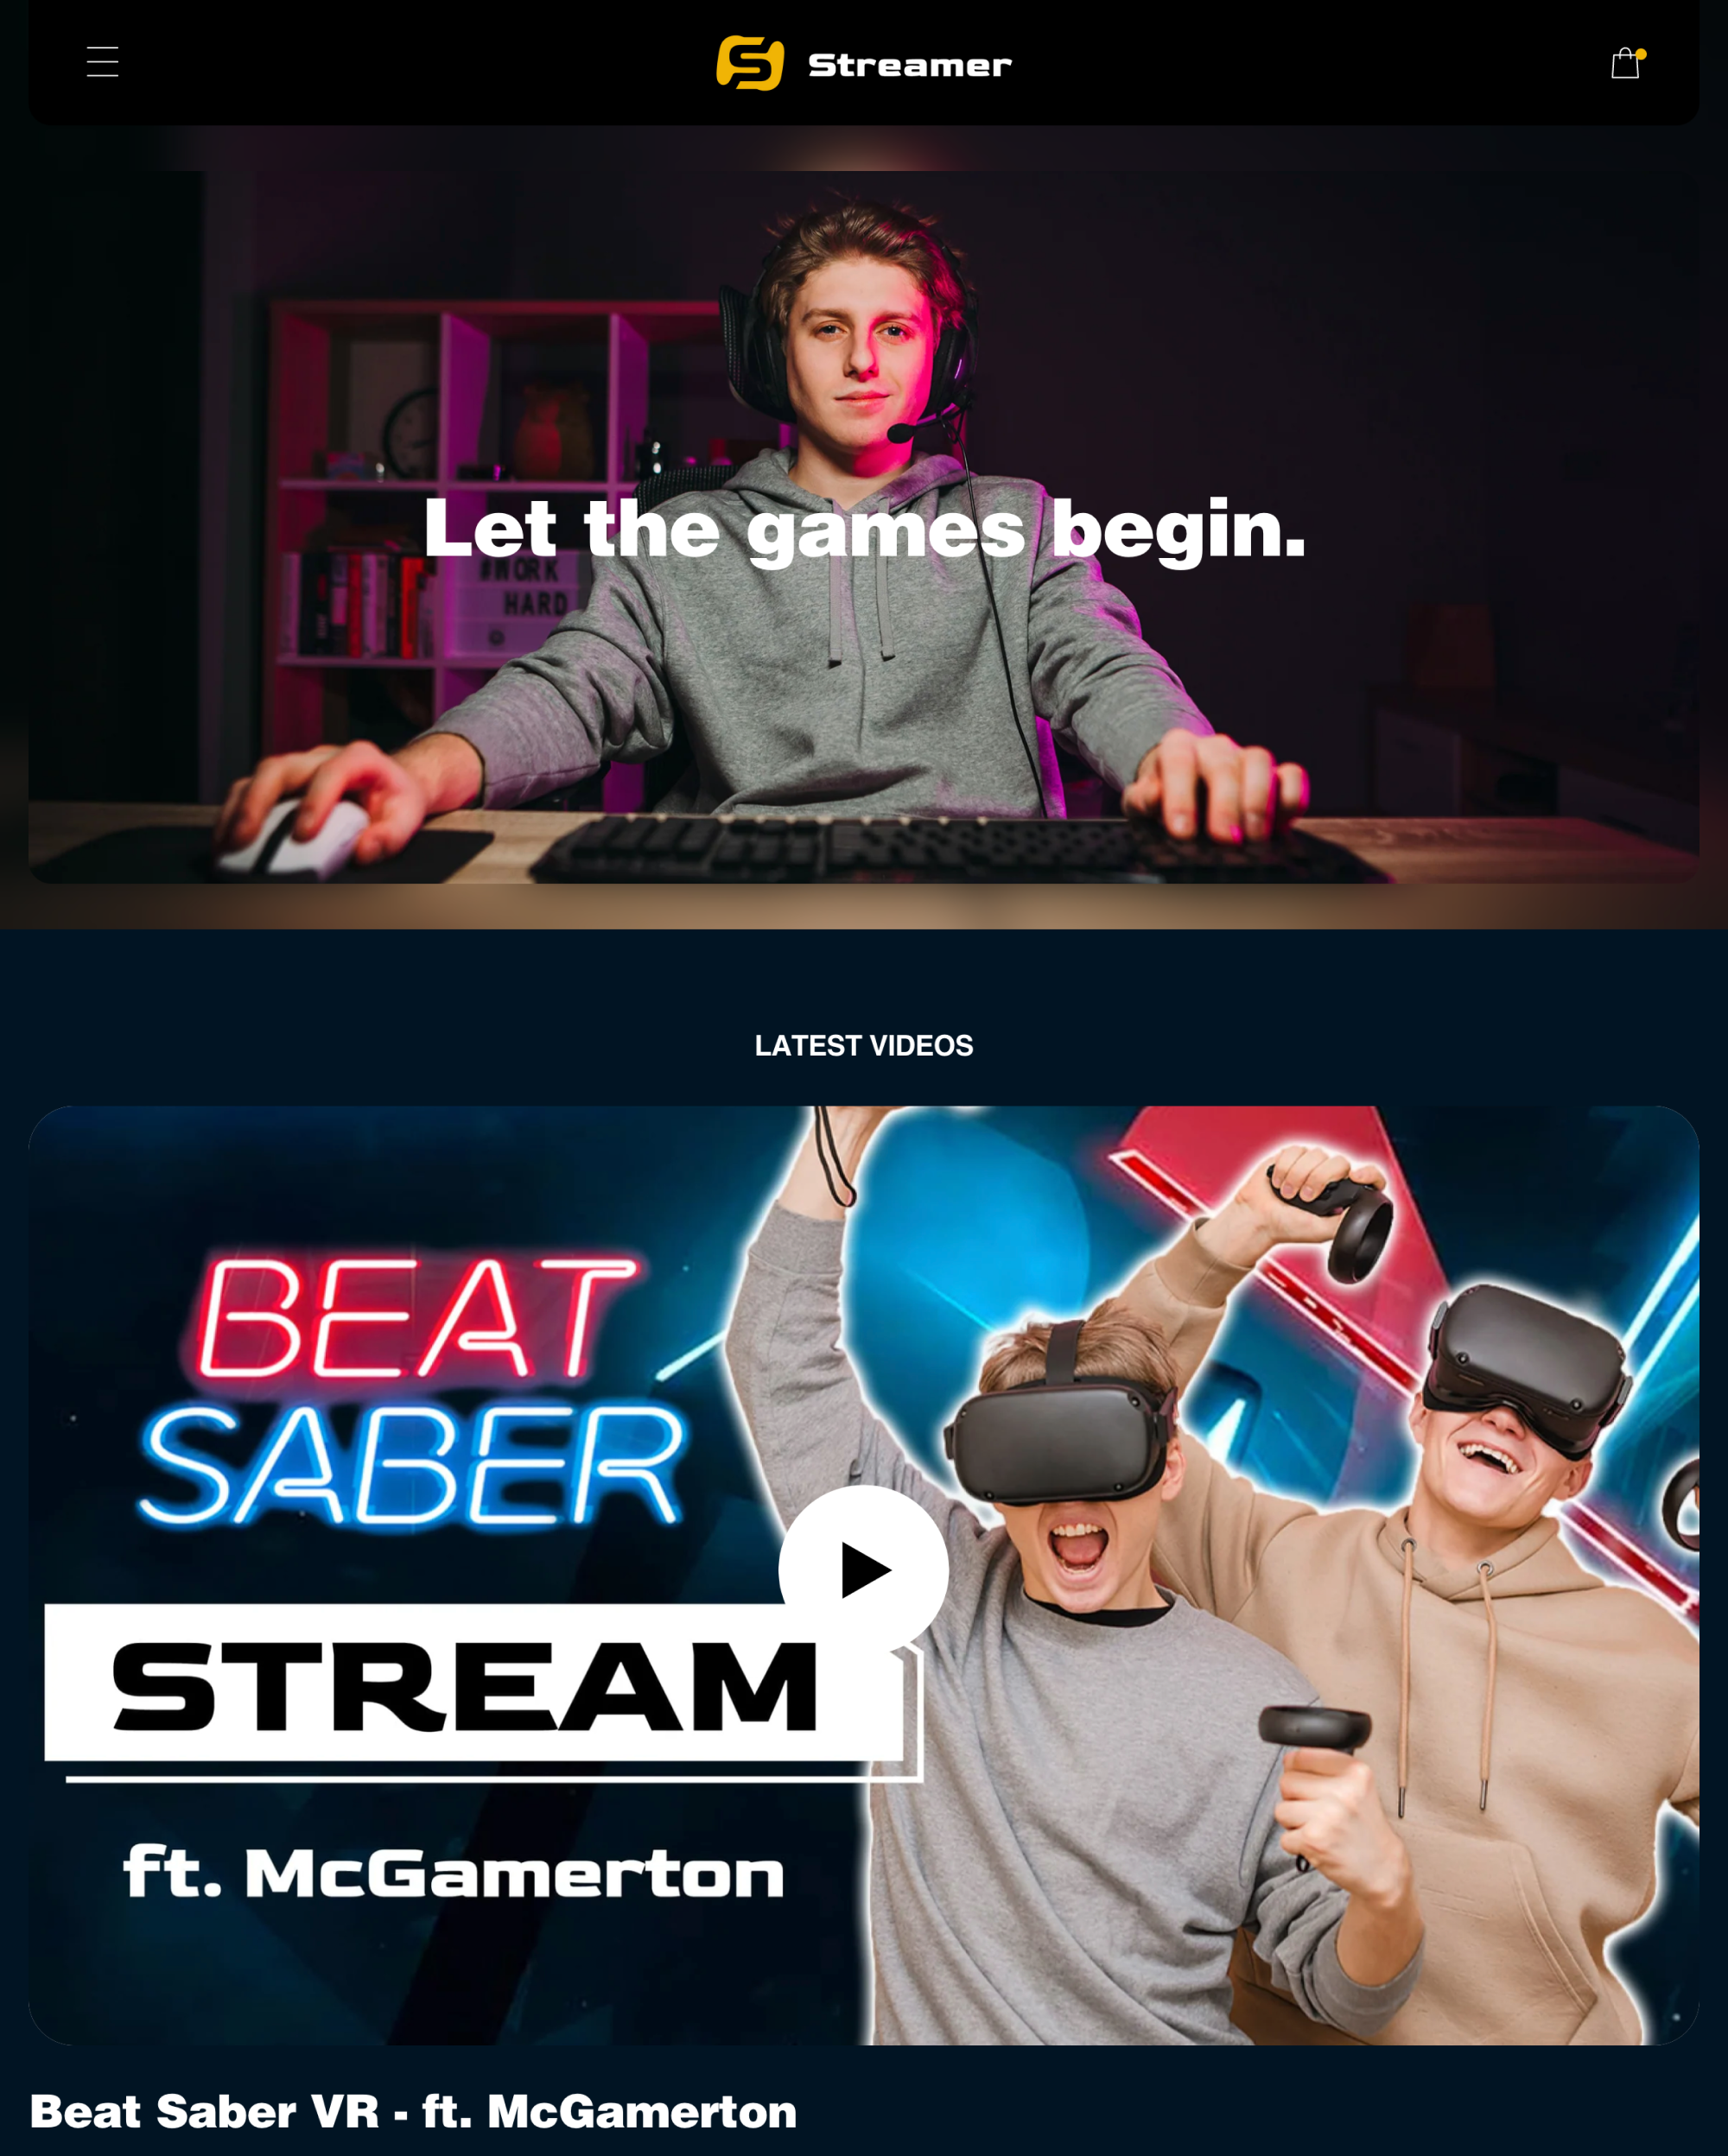 Aperçu de la version pour ordinateur du thème Creator dans le style « Streamer »